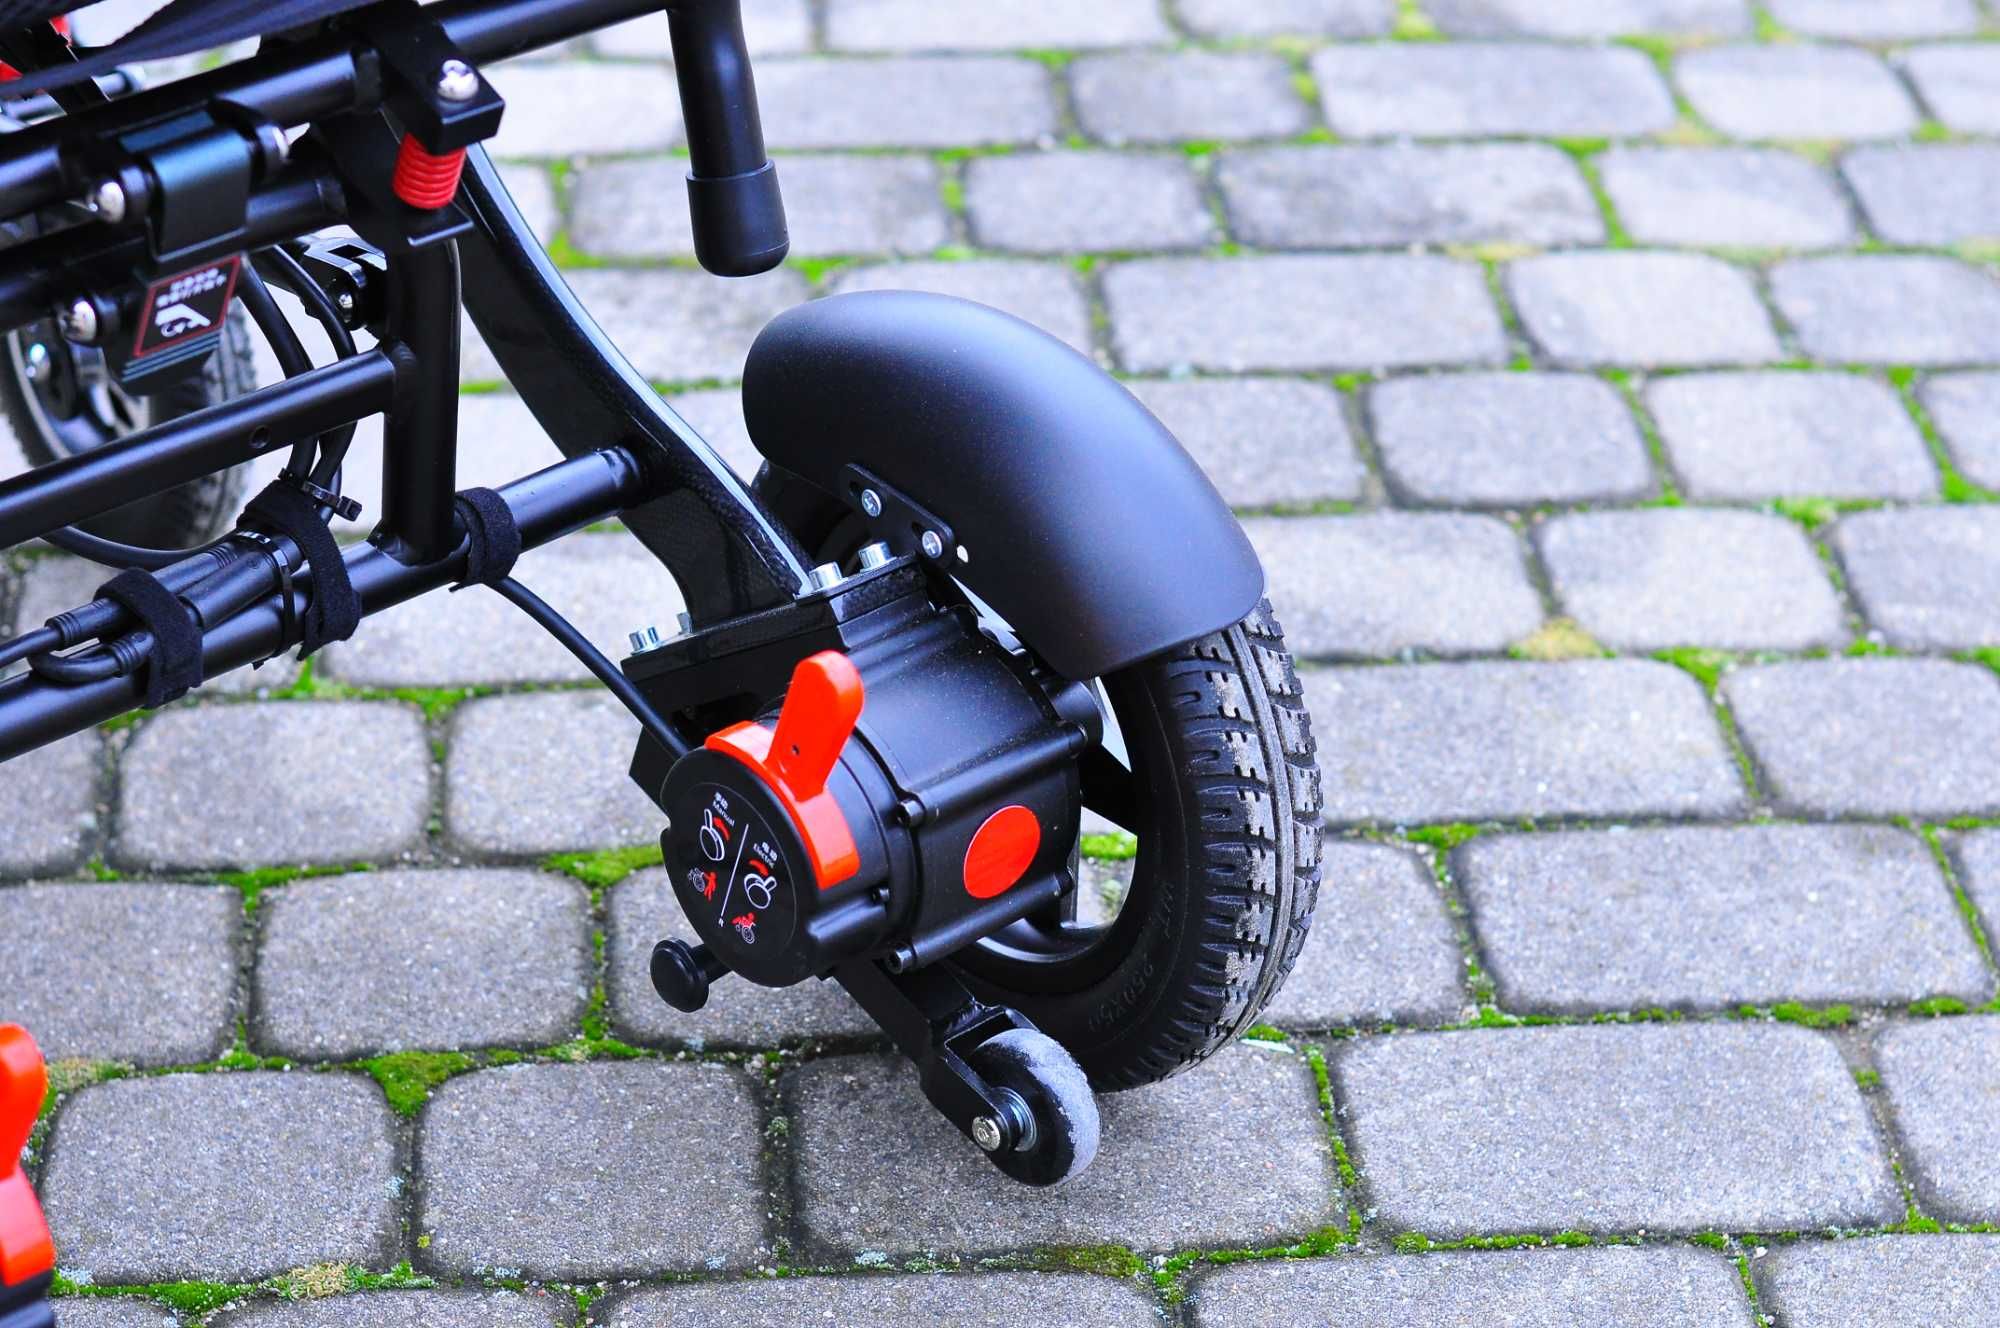 Elektryczny wózek inwalidzki Carbon 7009